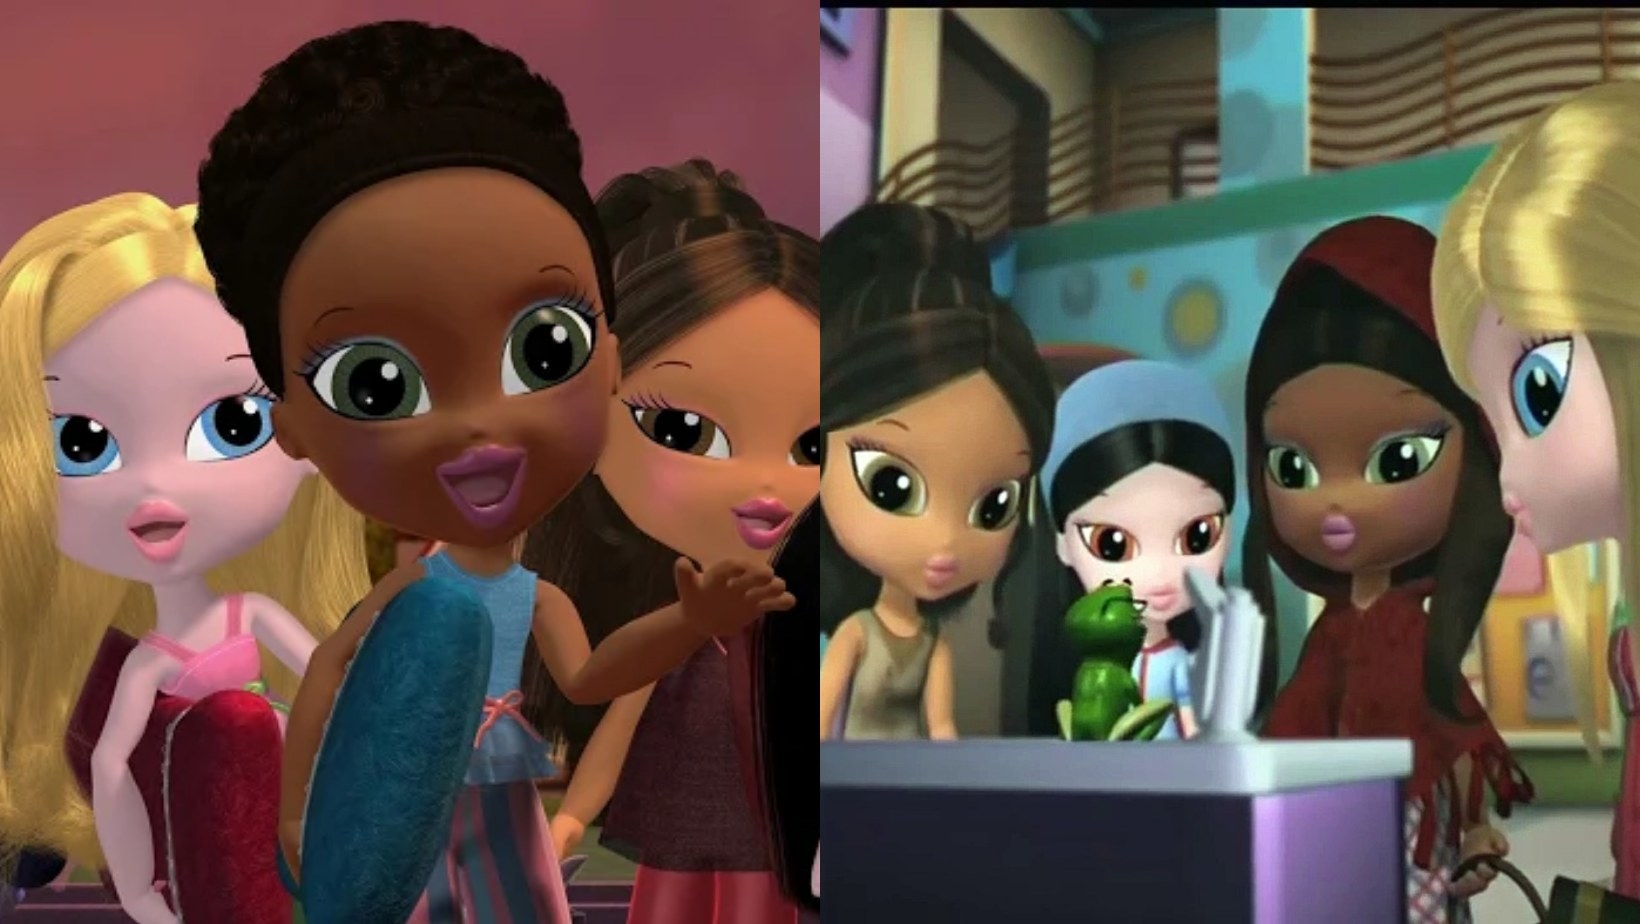 On the left, Cloe, Sasha, and Yasmine as kids, and on the right, Yasmine, Jade, Sasha, and Cloe look at a frog on a table